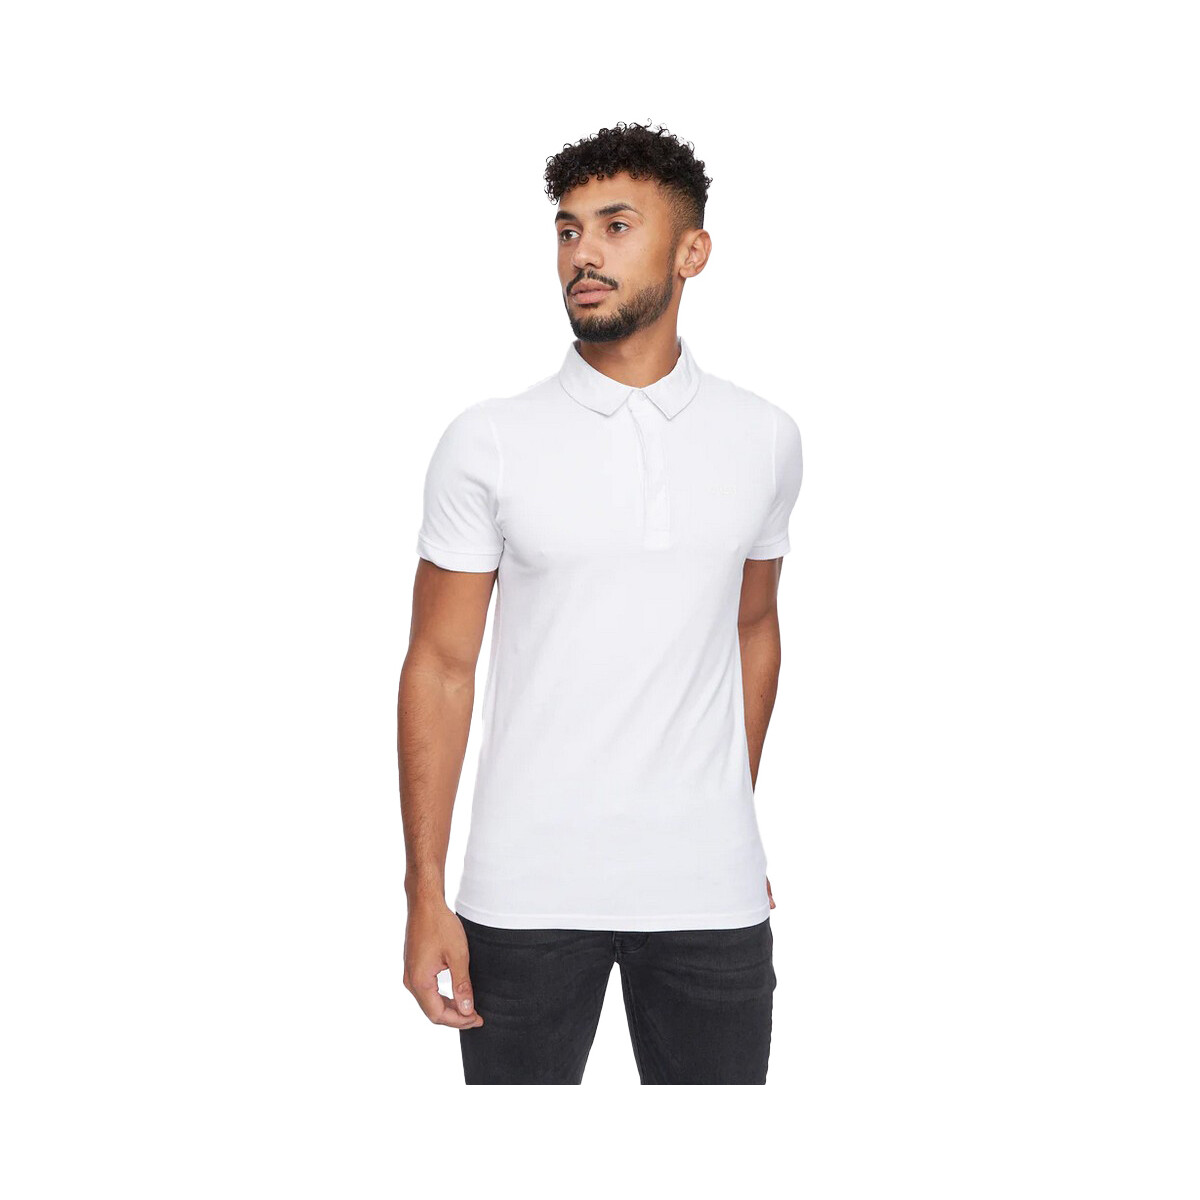 textil Hombre Tops y Camisetas Crosshatch Sullivan Blanco